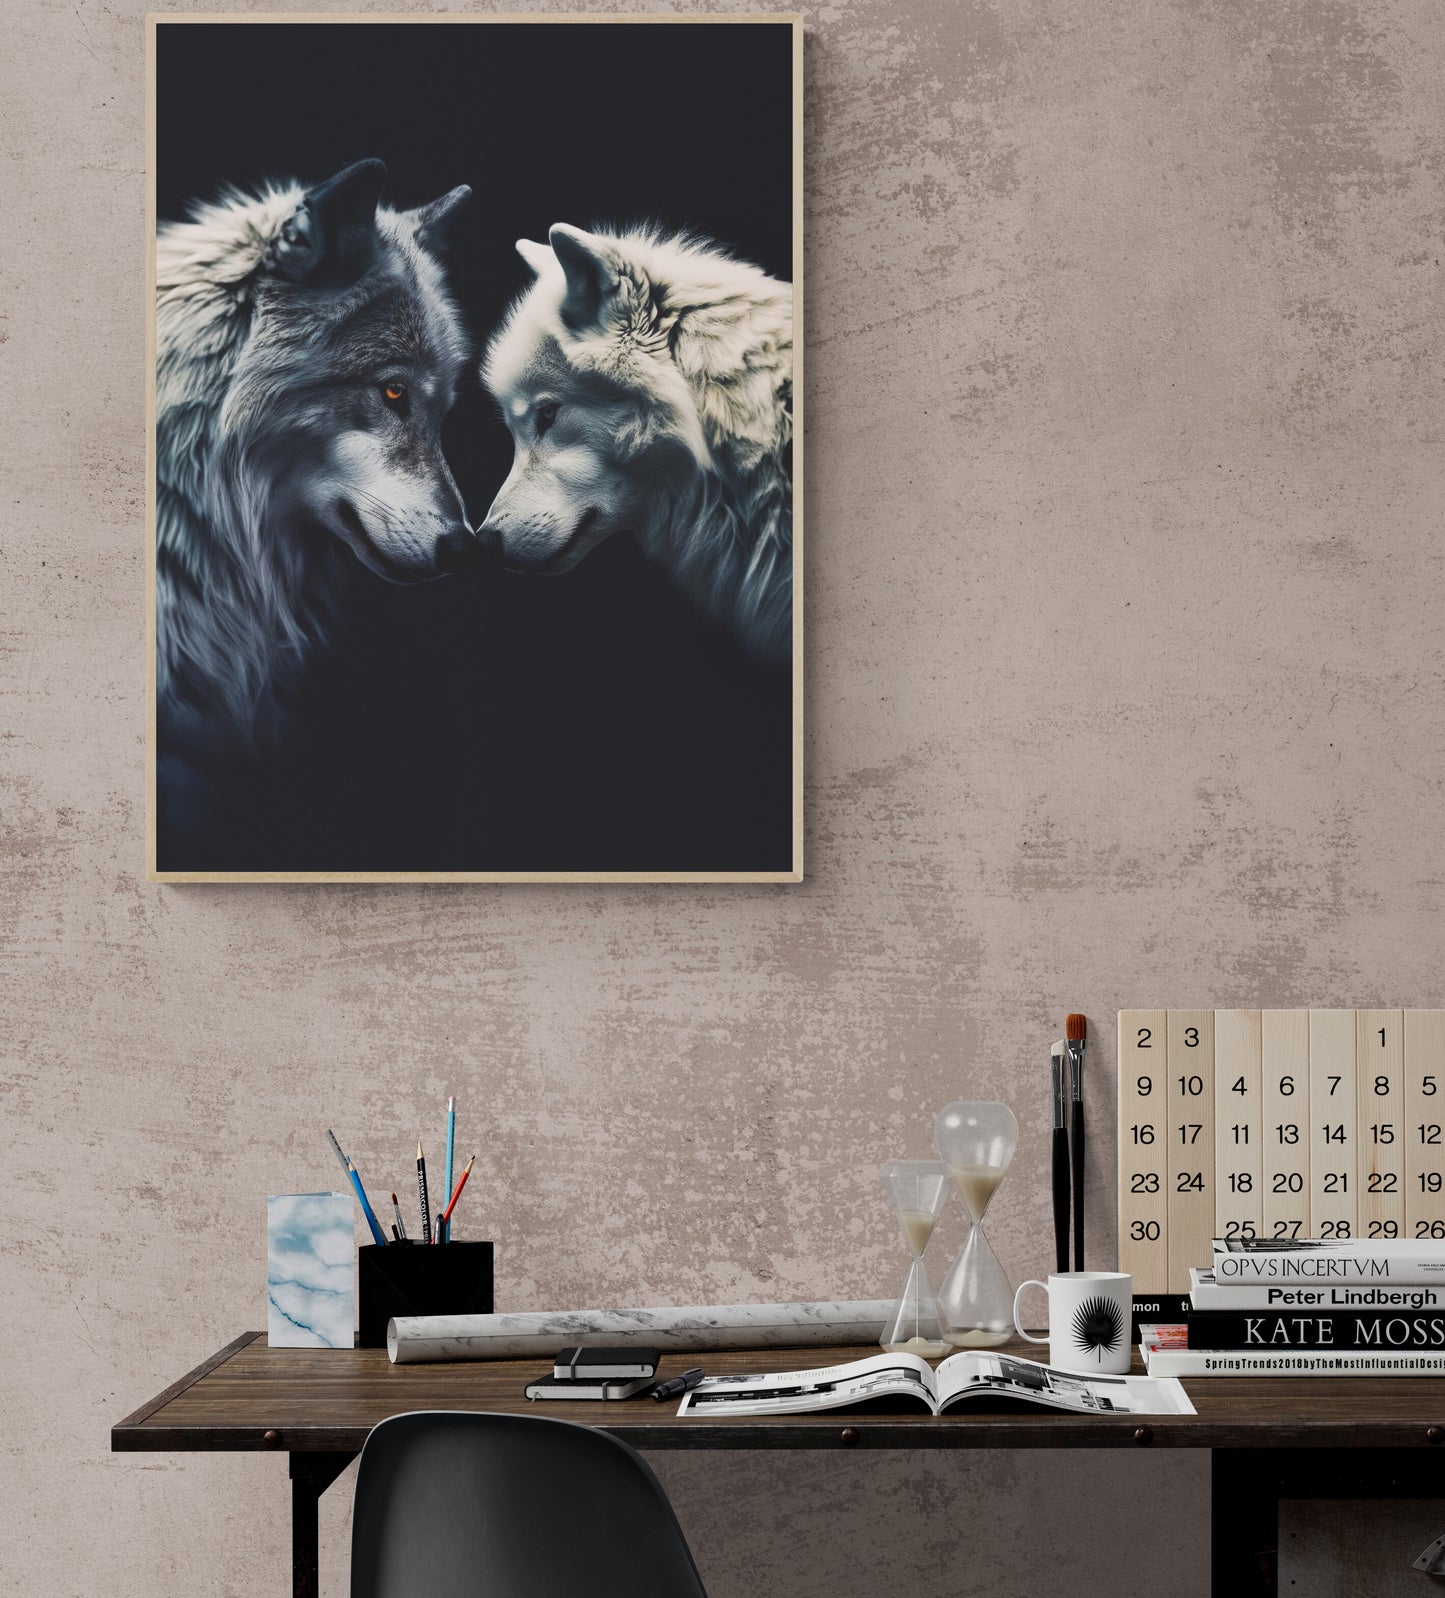  Toile photo avec un Loup Noir & Blanc pour bureau, capturant la tendresse entre deux animaux sauvage